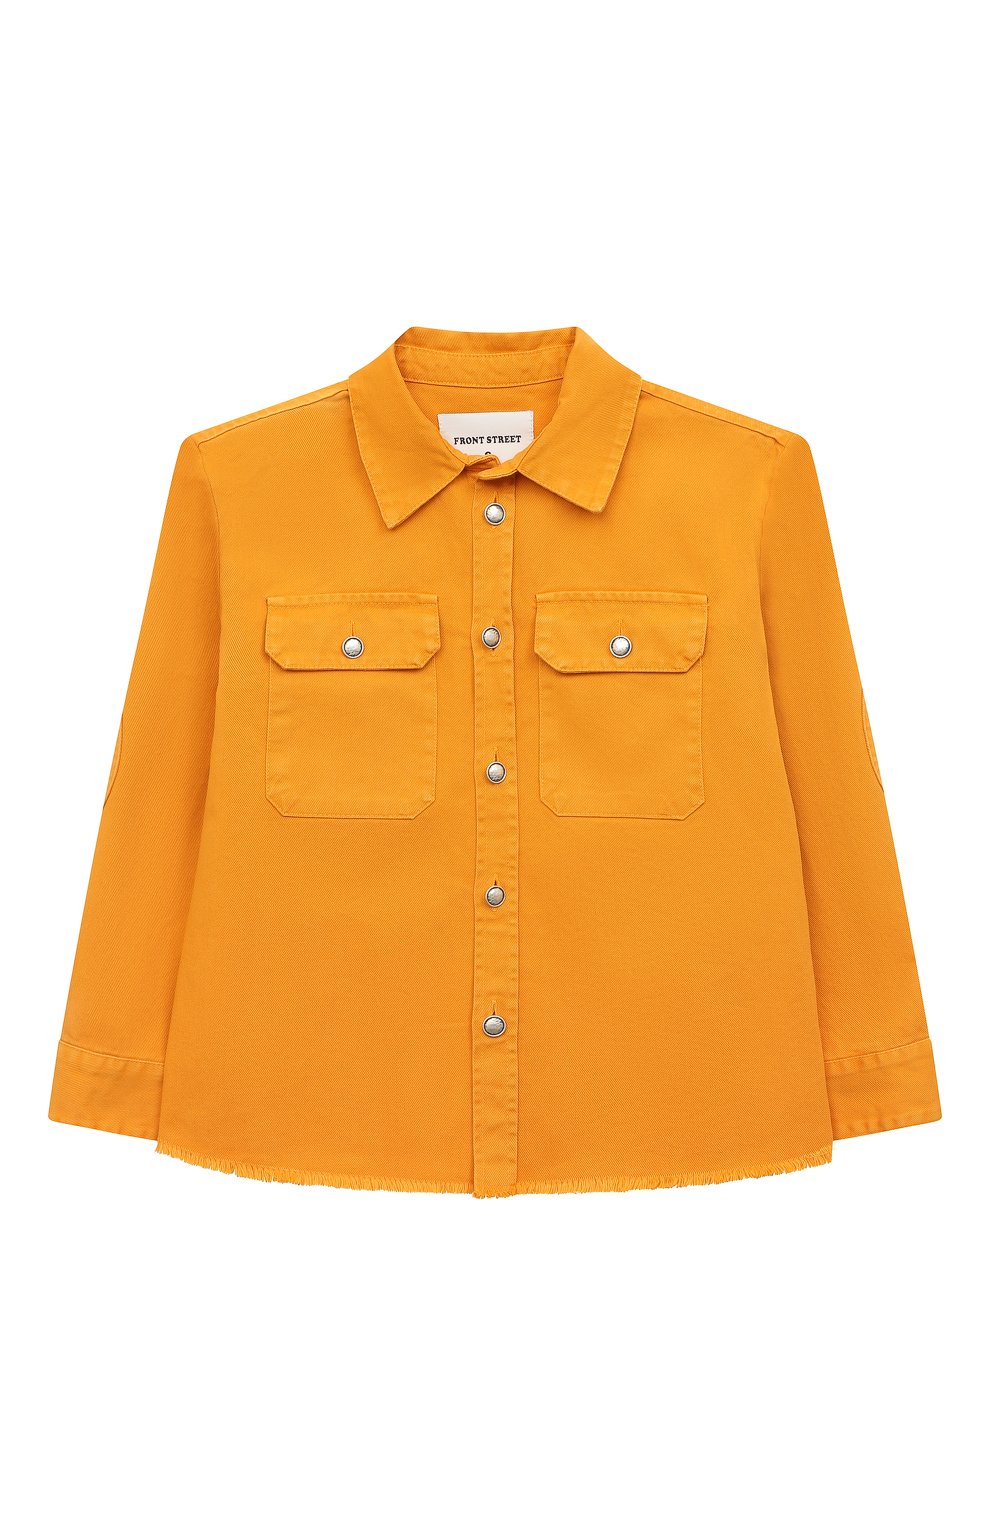 Верхняя одежда Front street 8 Kids, Джинсовая куртка Front street 8 Kids, Италия, Оранжевый, Хлопок: 100%;, 13364054  - купить